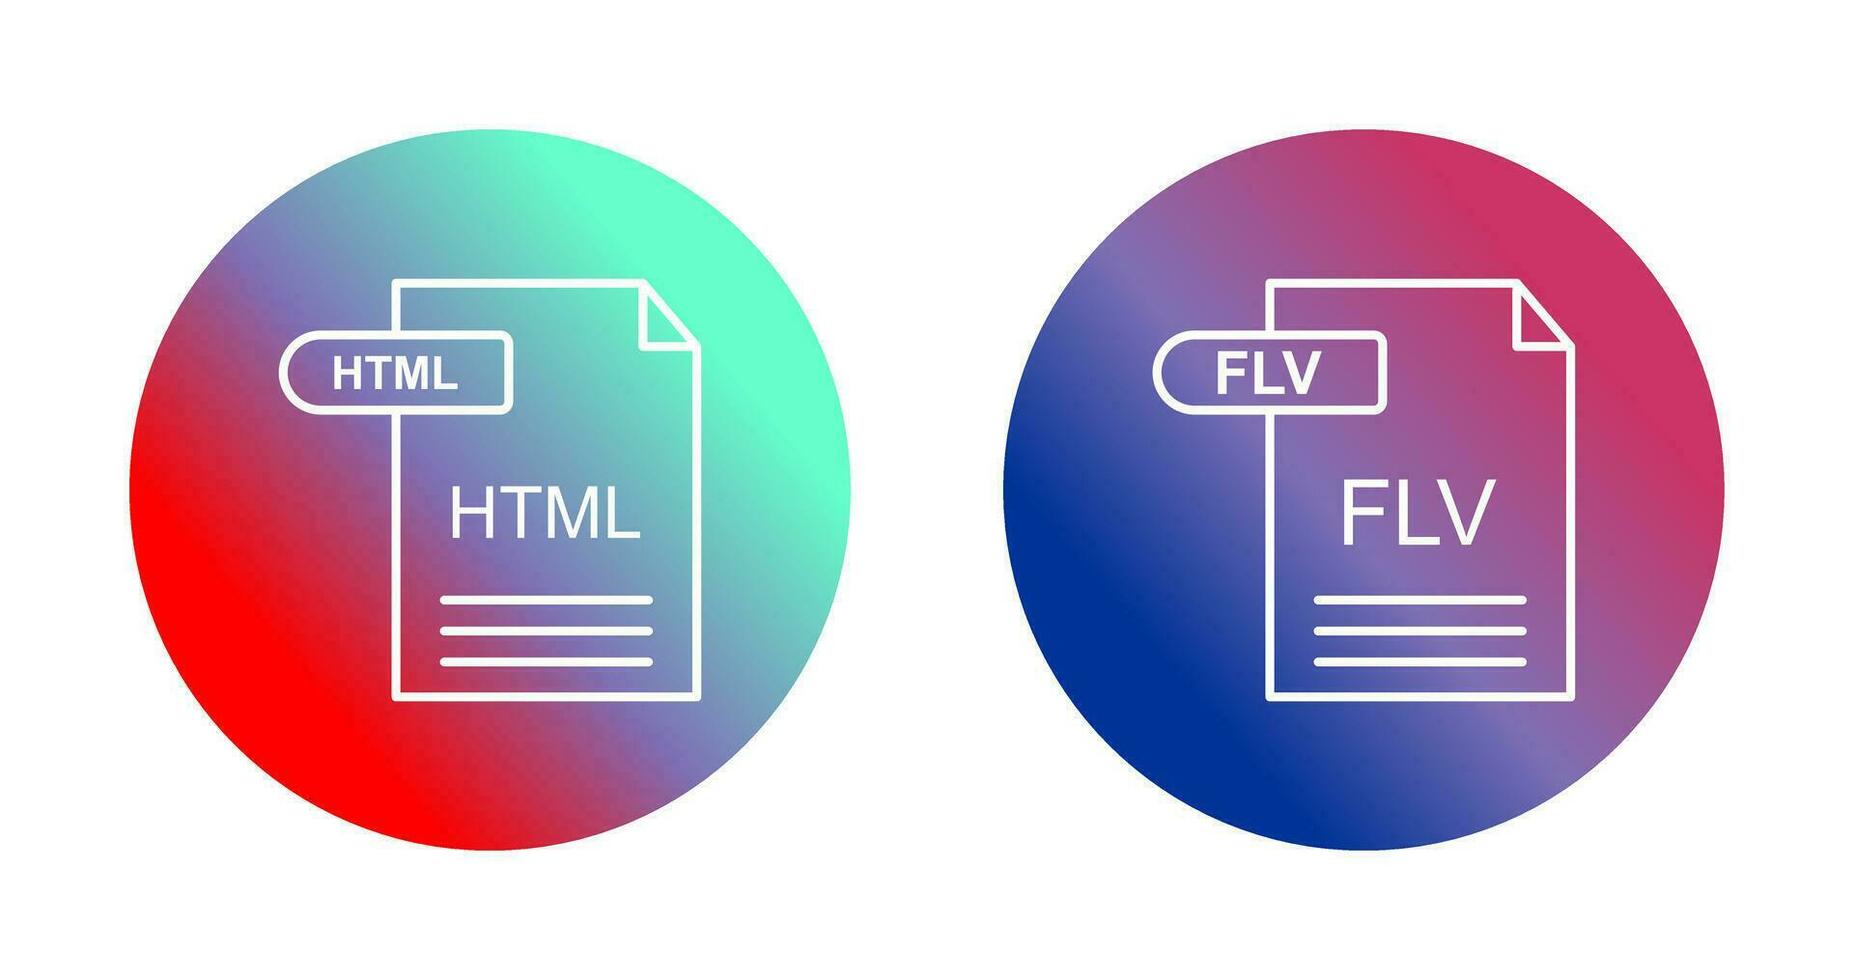 html y flv icono vector